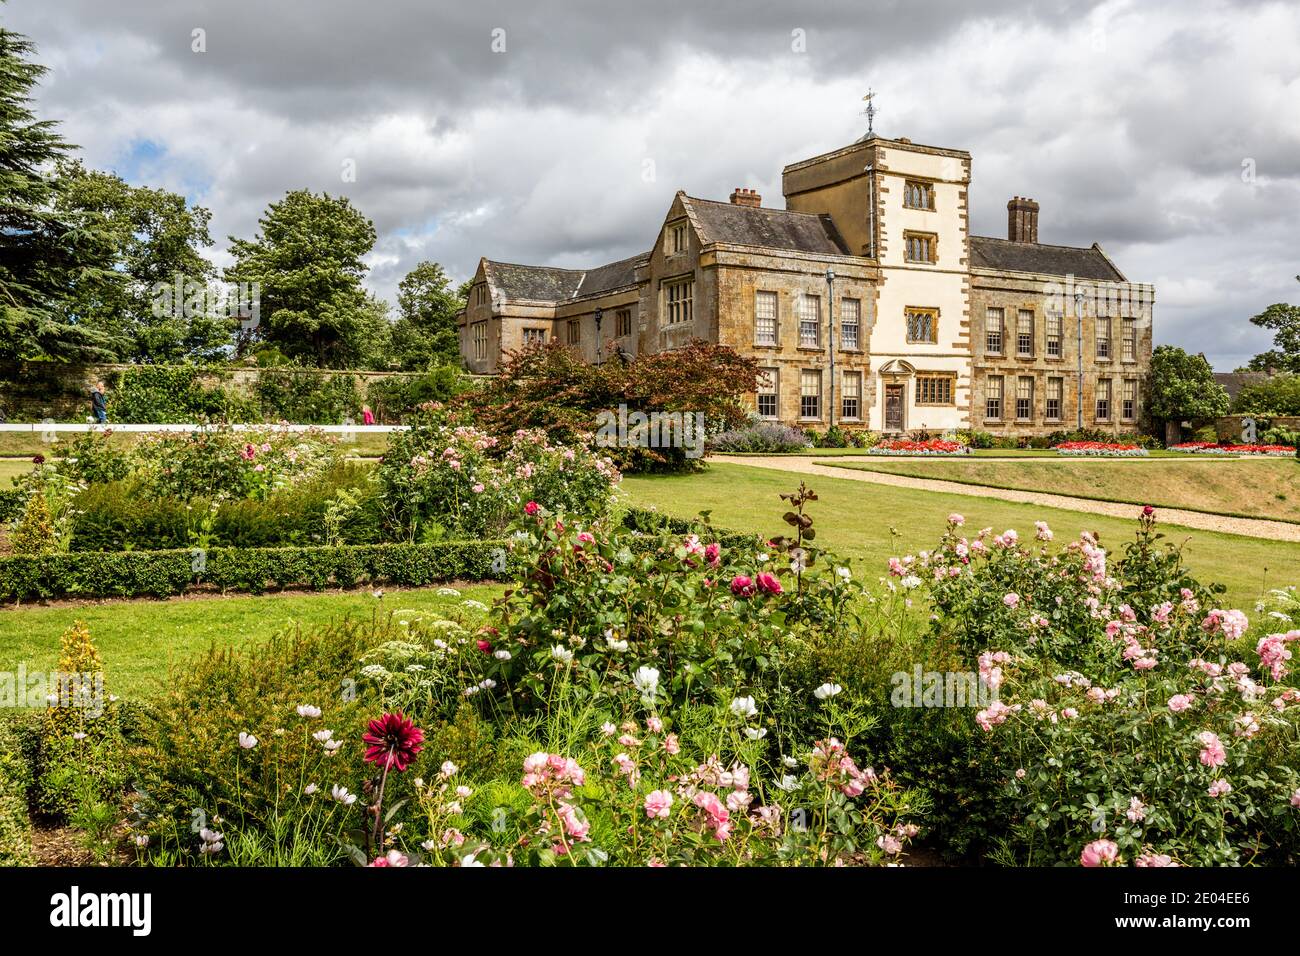 Das Haus und die Gärten von Canons Ashby, einem elisabethanischen Herrenhaus in Canons Ashby, Northamptonshire, England. Stockfoto